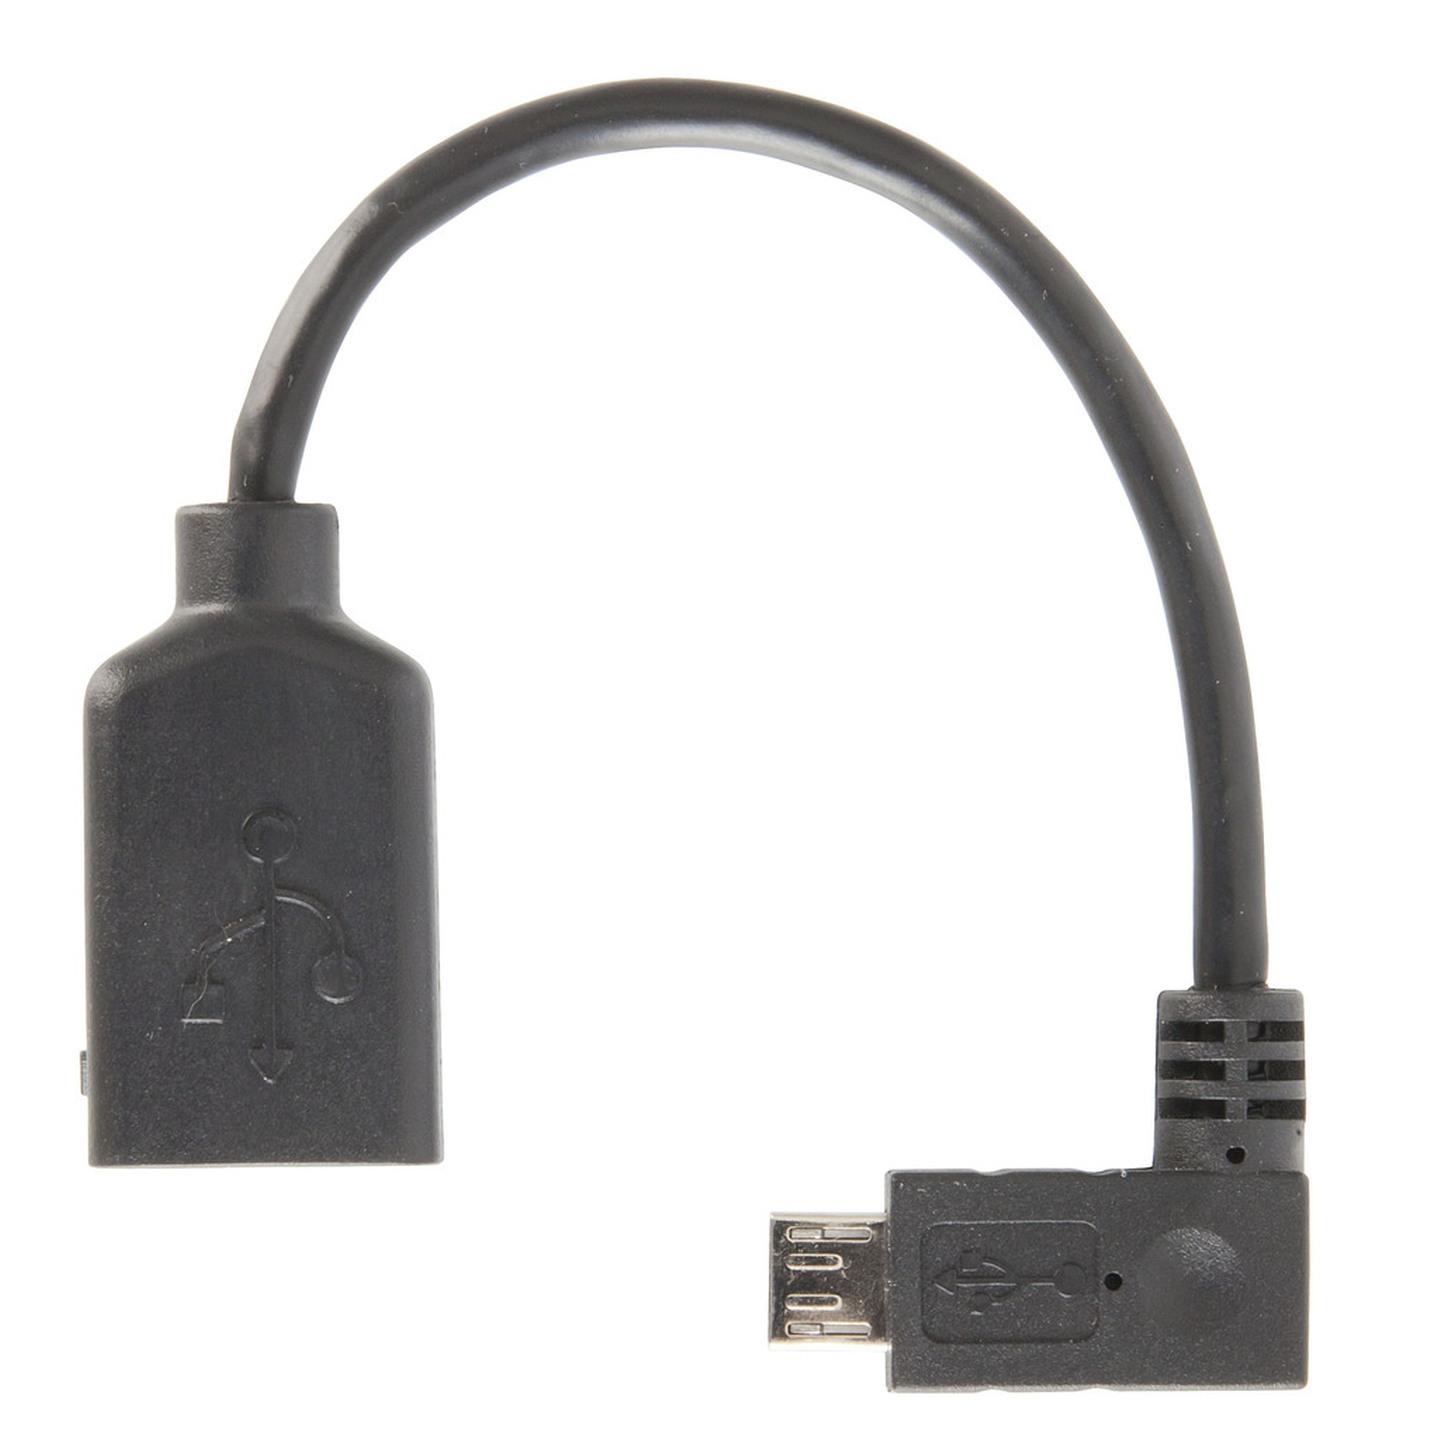 USB2.0 OTG Female A Plug to Right-Angle Micro Male B Plug